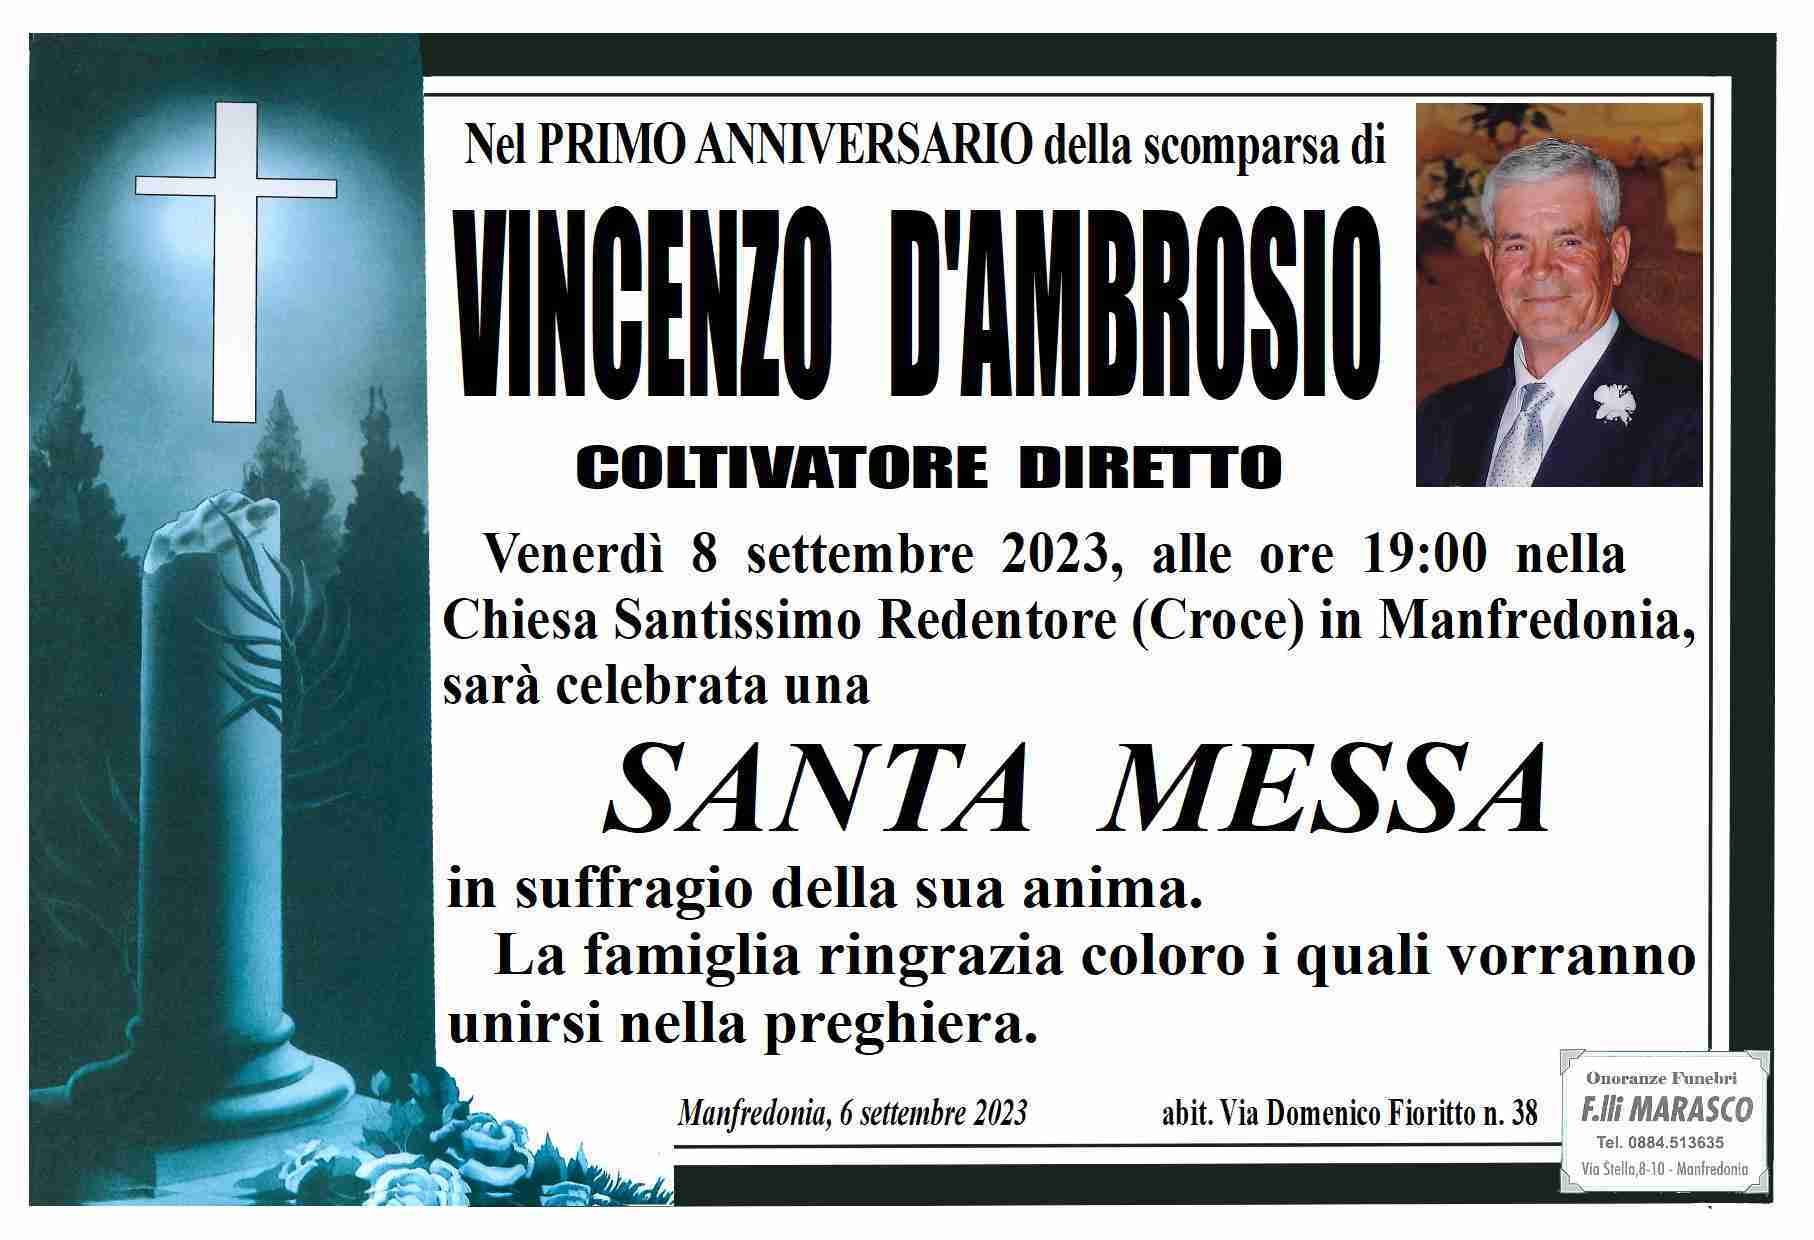 Vincenzo D'Ambrosio